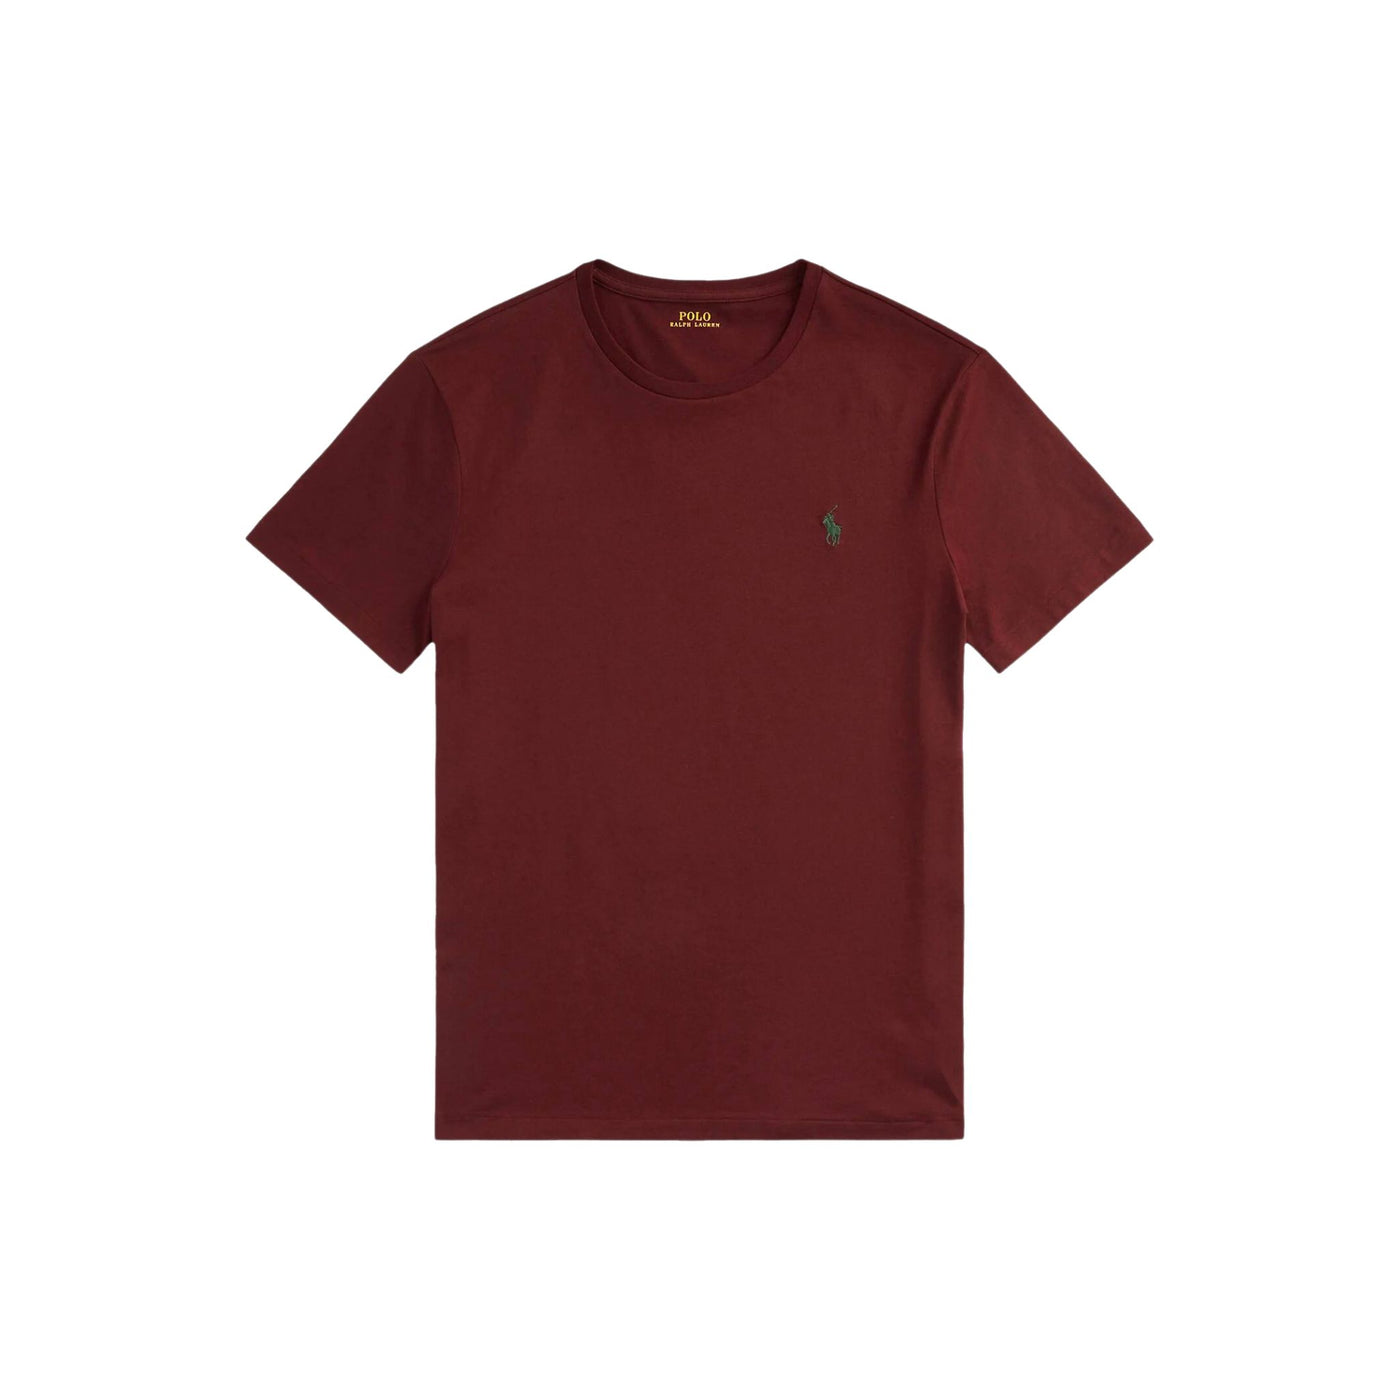 T-shirt a maniche corte Uva, Polo Ralph Lauren, fronte